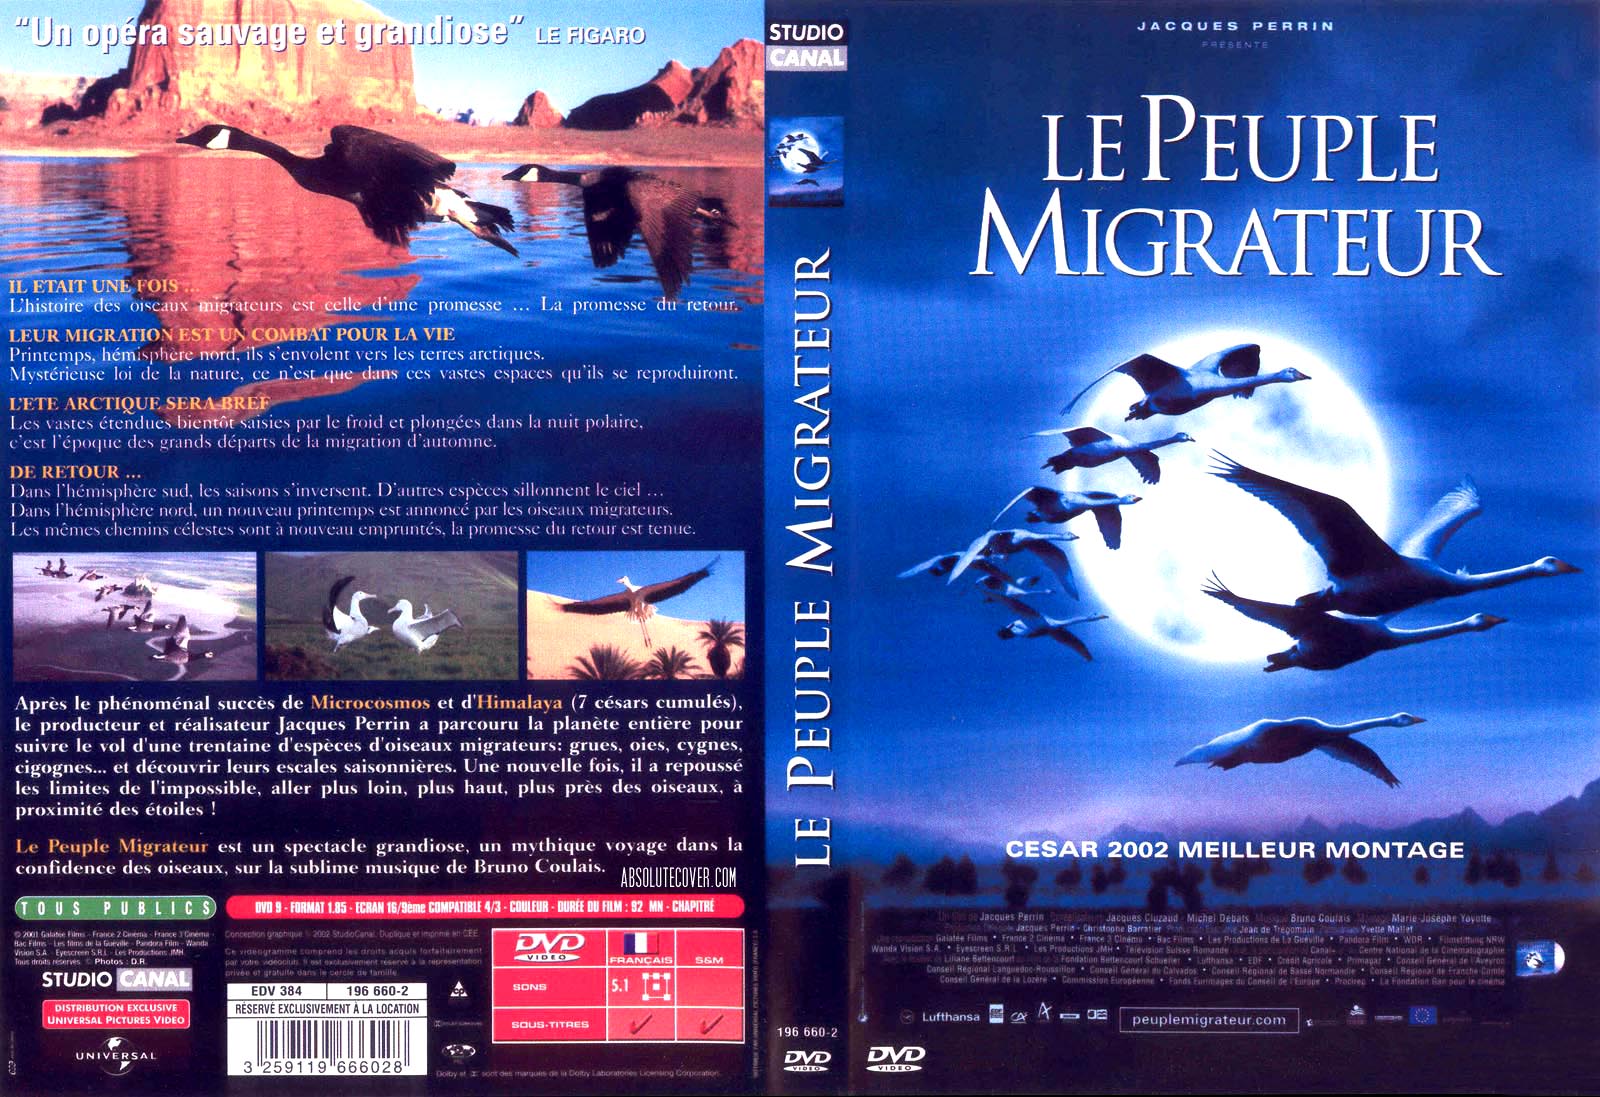 Le peuple migrateur (v2)